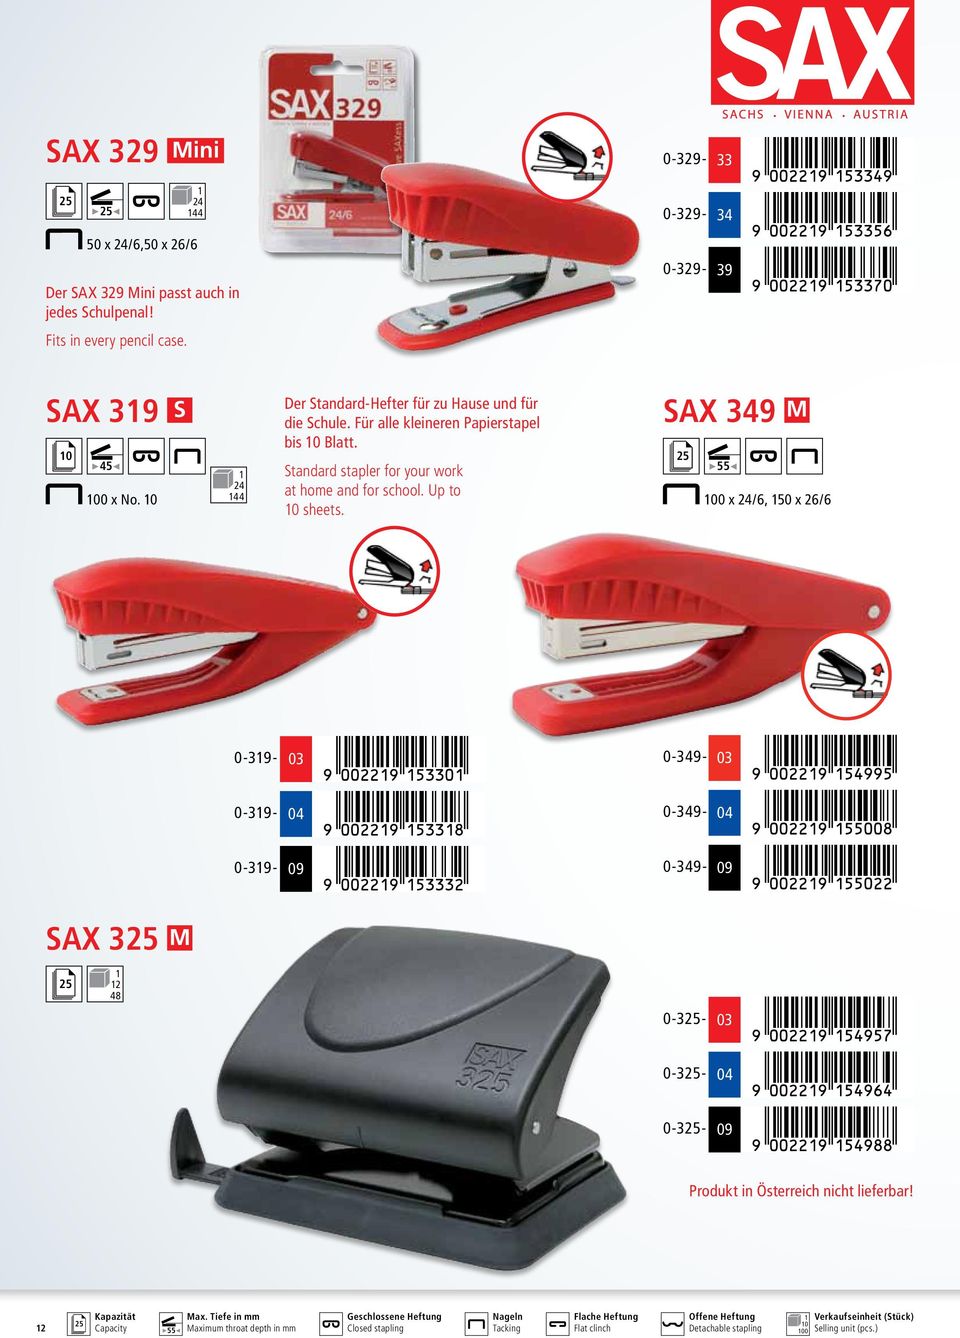 SAX 349 M 0 x 24/6, 50 x 26/6 0-39- 0-349- 0-39- 0-349- 0-39- 09 0-349- 09 SAX 3 M 2 48 0-329- 0-3- 0-3- 0-3- 09 Produkt in Österreich nicht lieferbar!